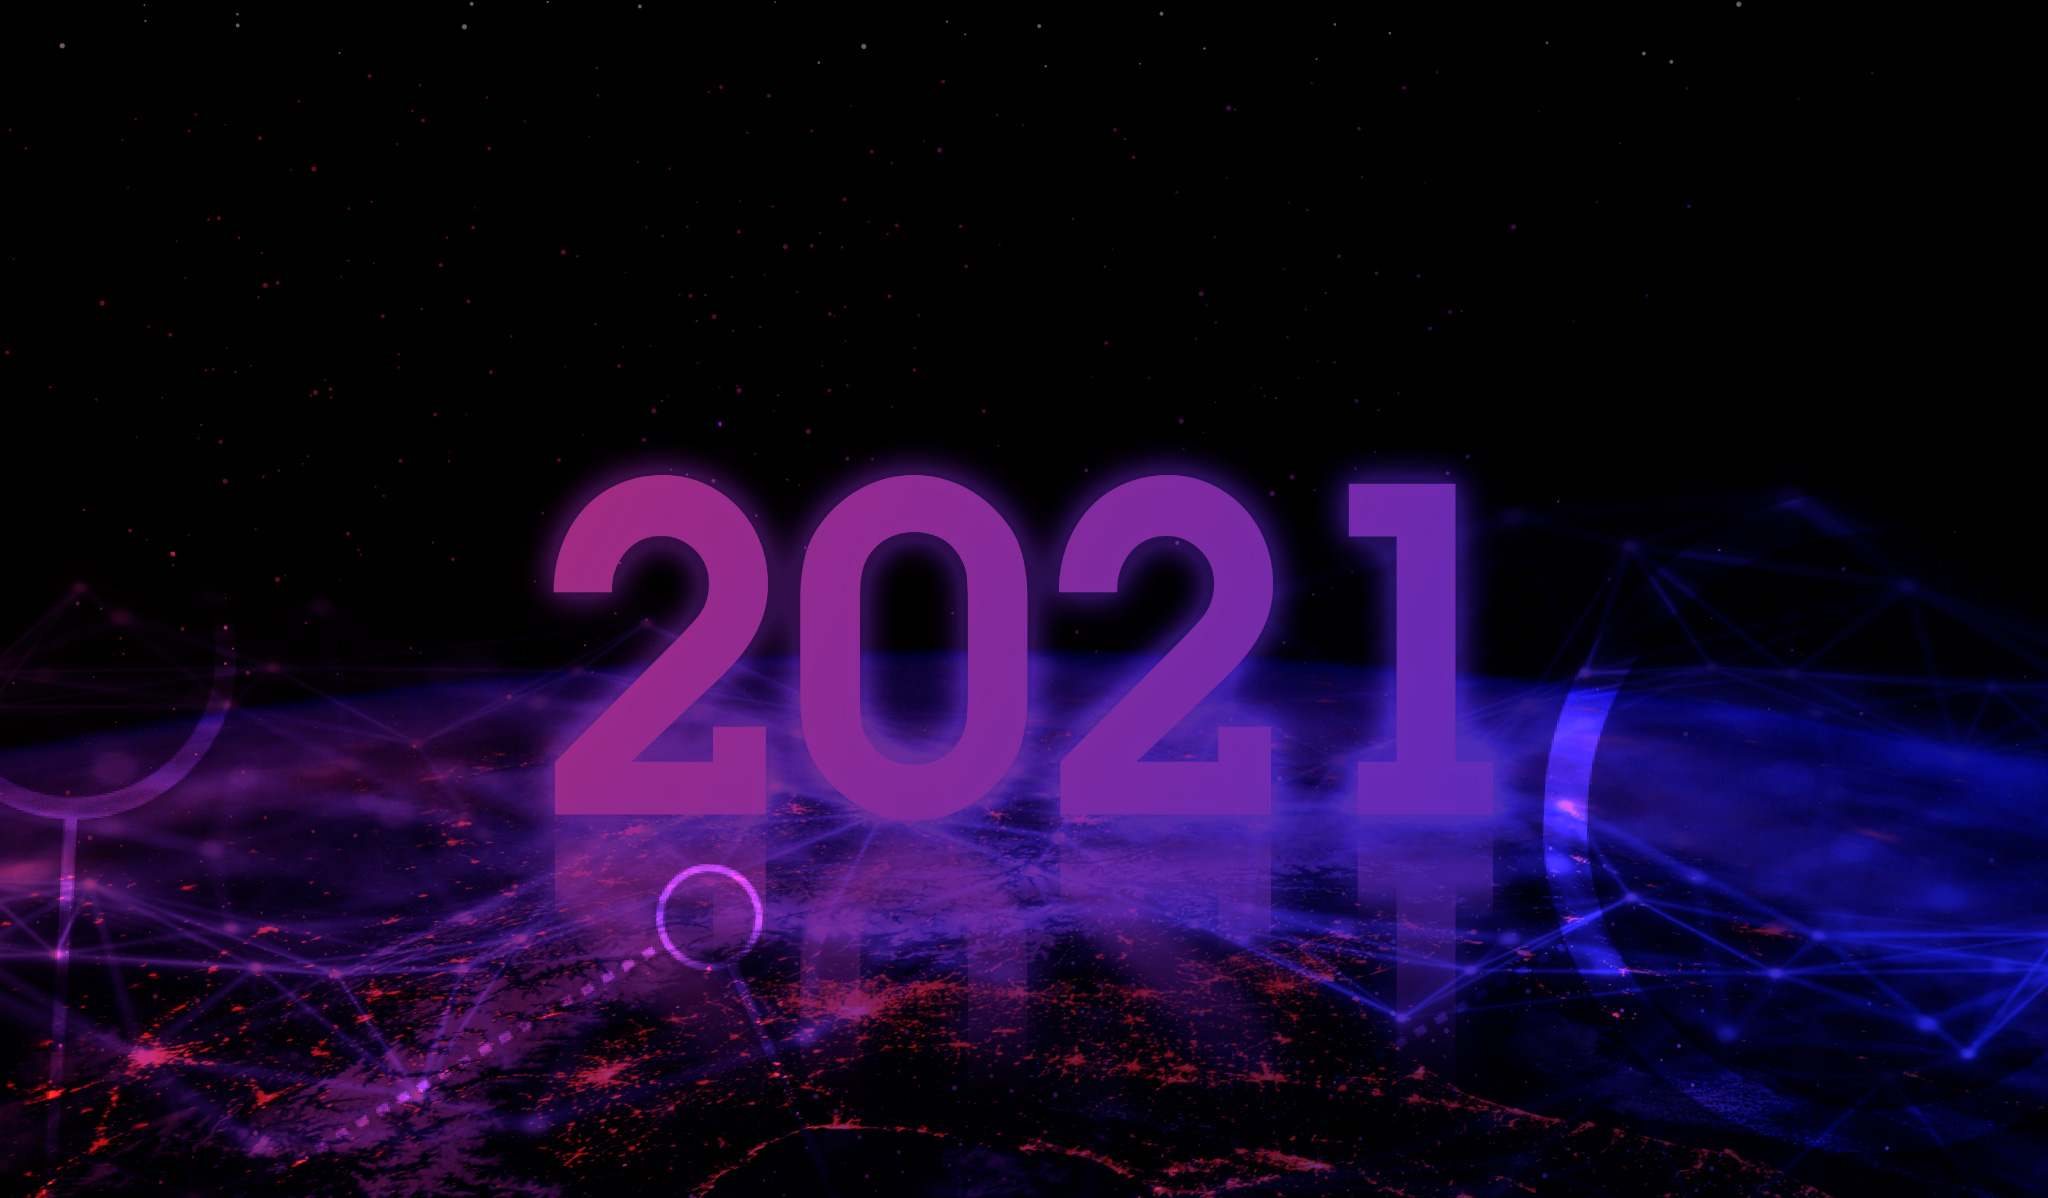 ilustração do planeta Terra com o número 2021 escrito em cima